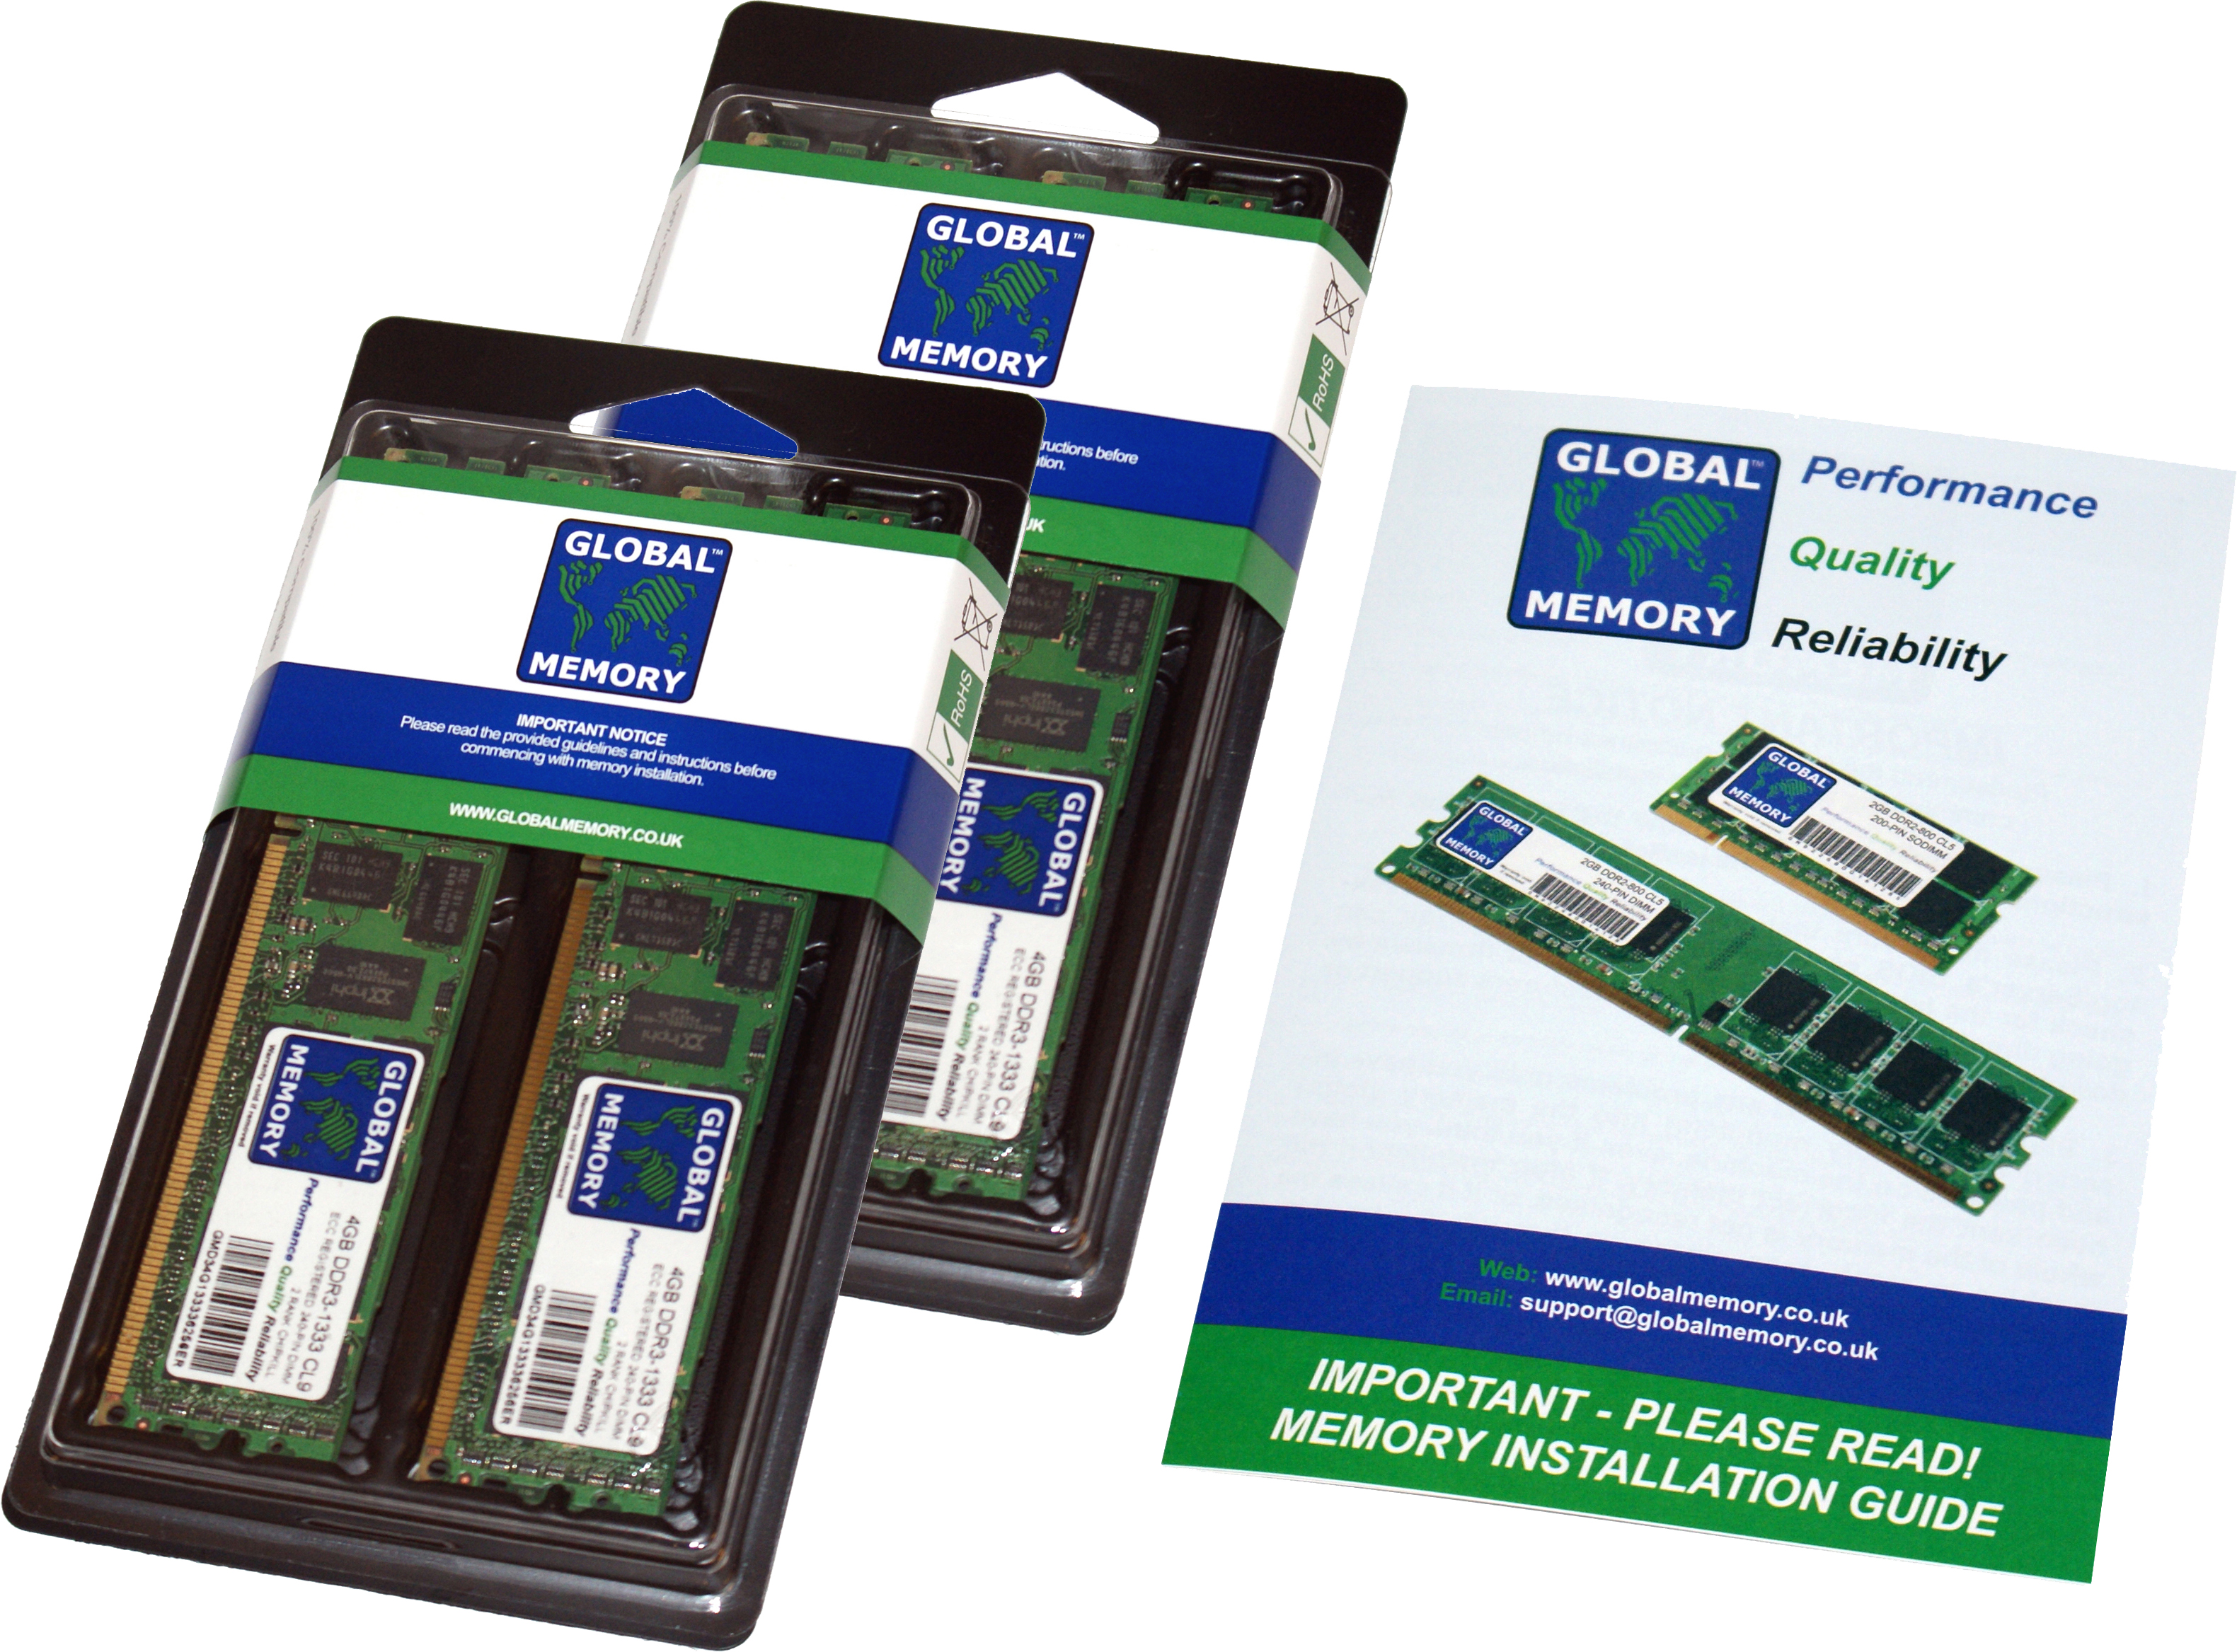 256GB (4 x 64GB) DDR4 3200MHz PC4-25600 288-PIN LOAD REDUCED ECC REGISTERED DIMM (LRDIMM) MEMORY RAM KIT FOR SUN SERVERS/WORKSTATIONS (16 RANK KIT CHIPKILL)